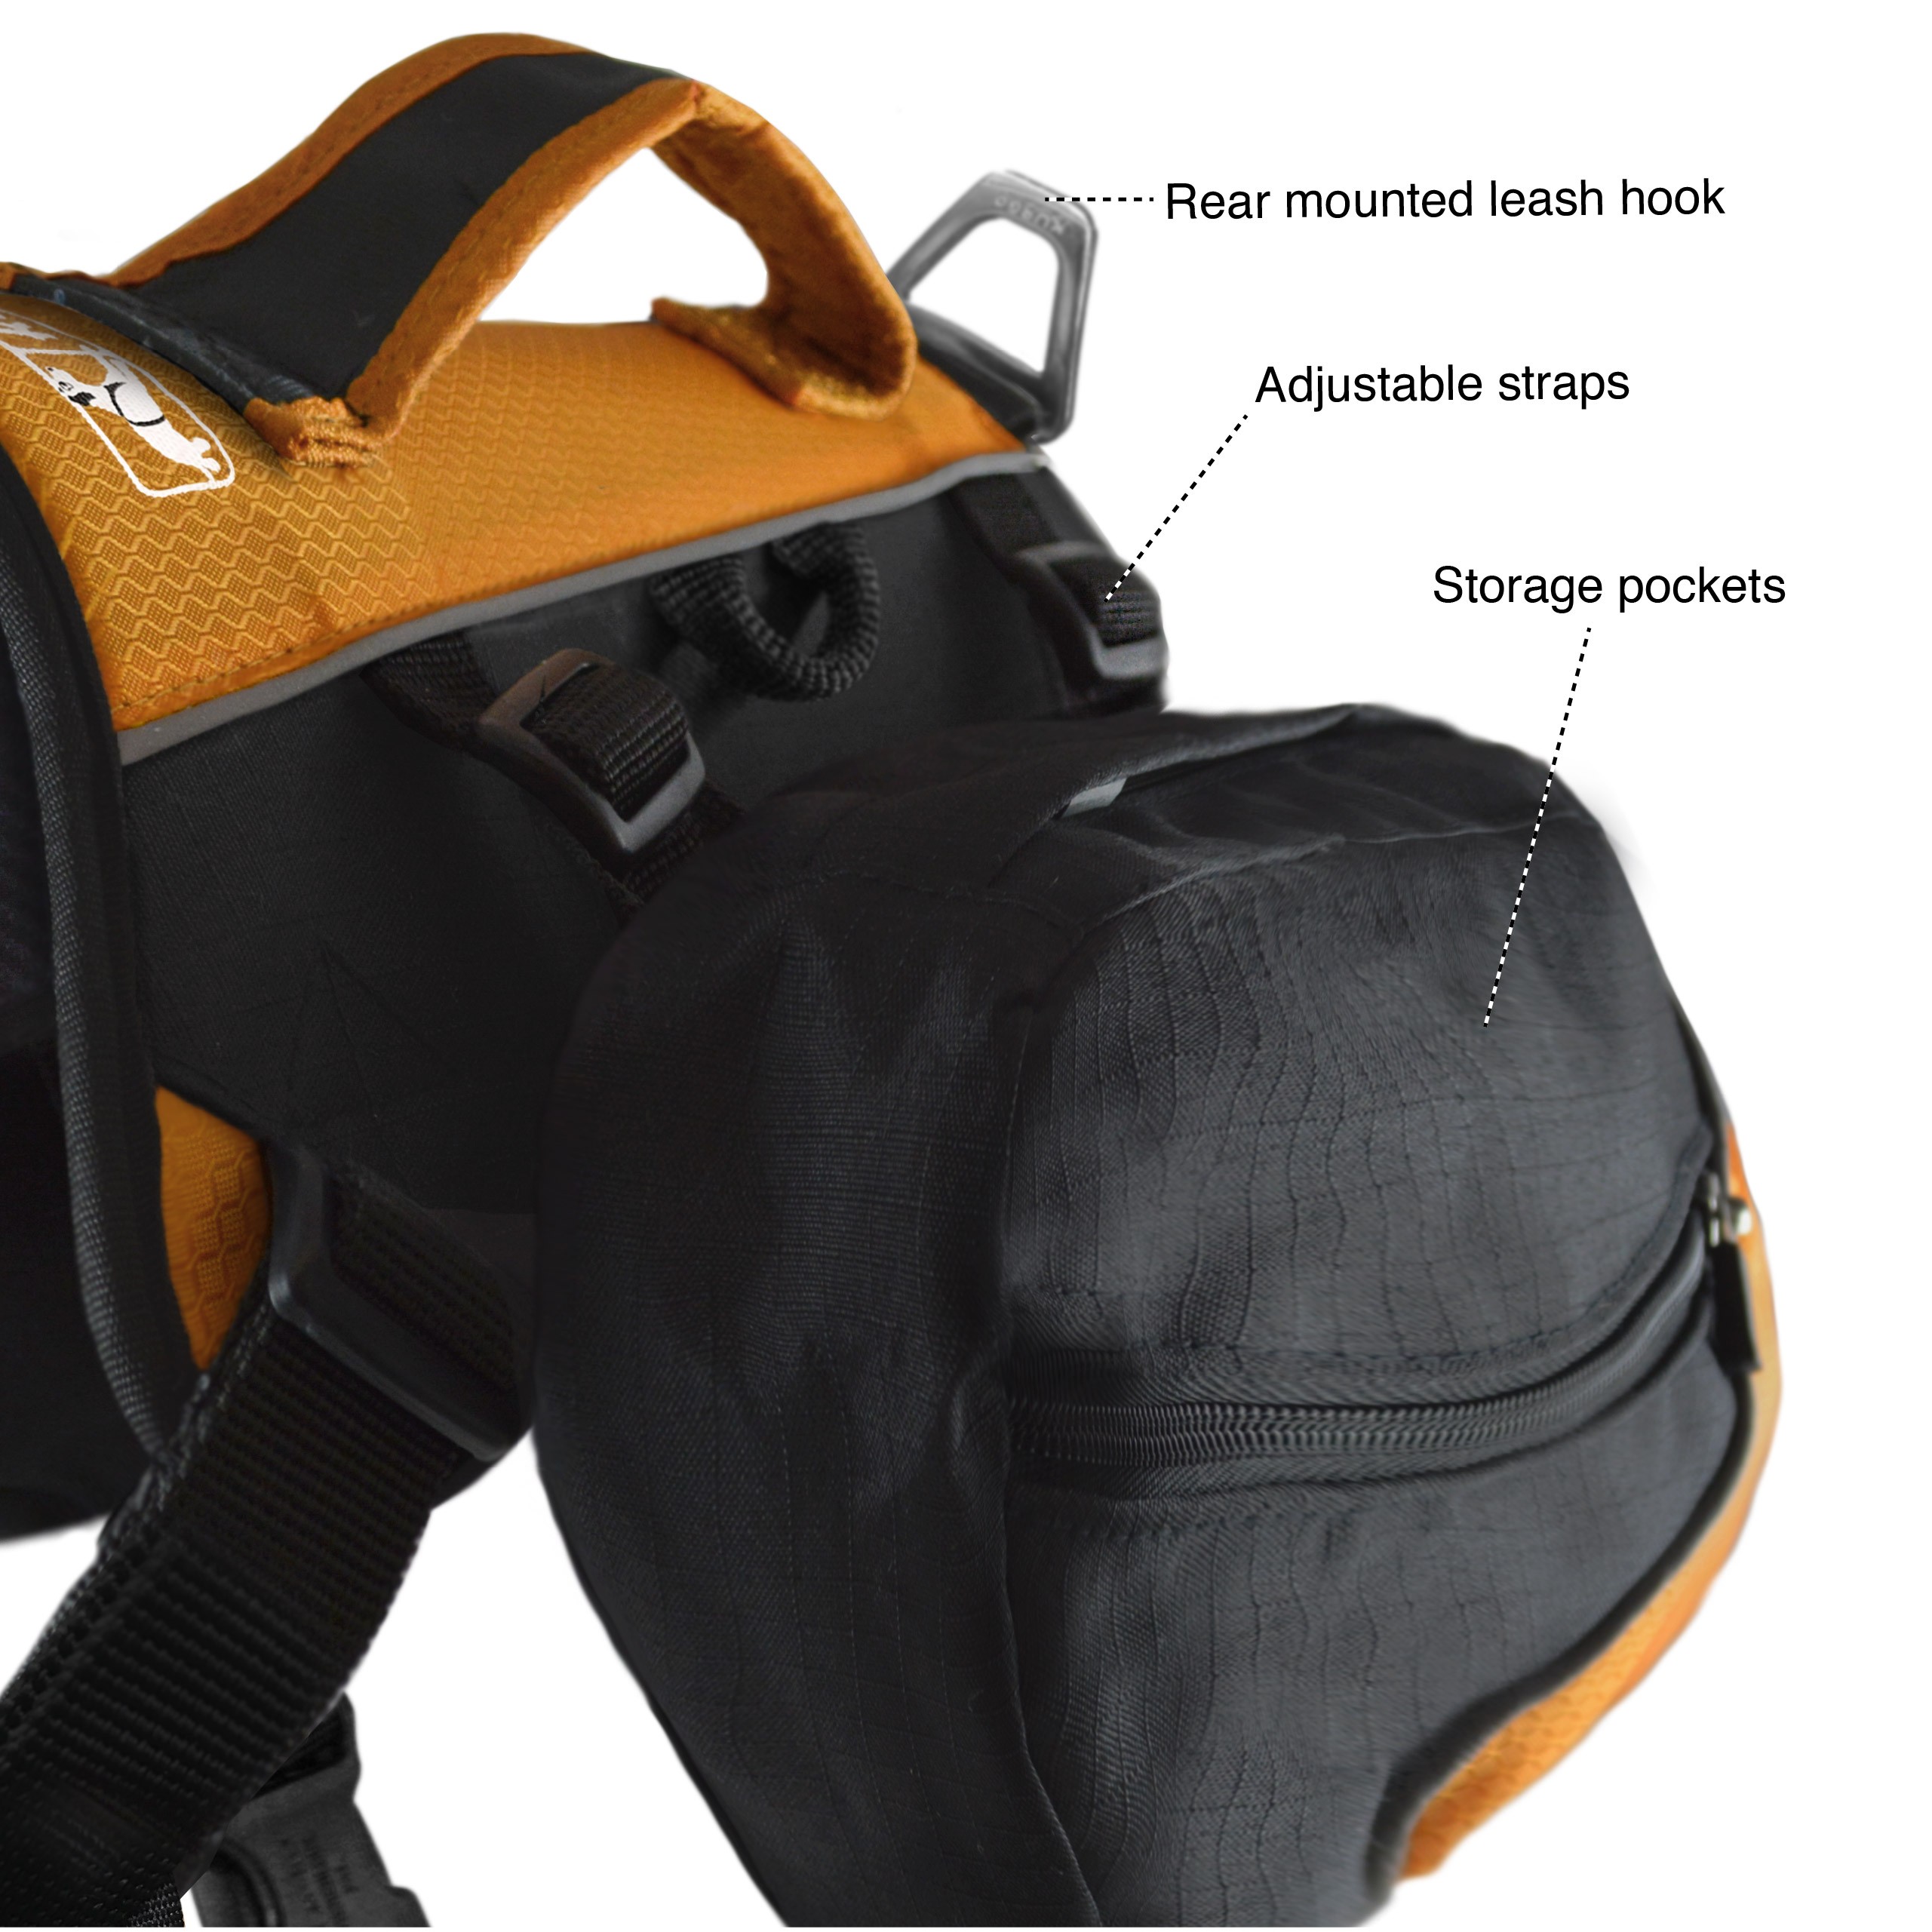 KURGO BIG Baxter Backpack - BLACK/ORANGE - for dogs 50-110 pounds